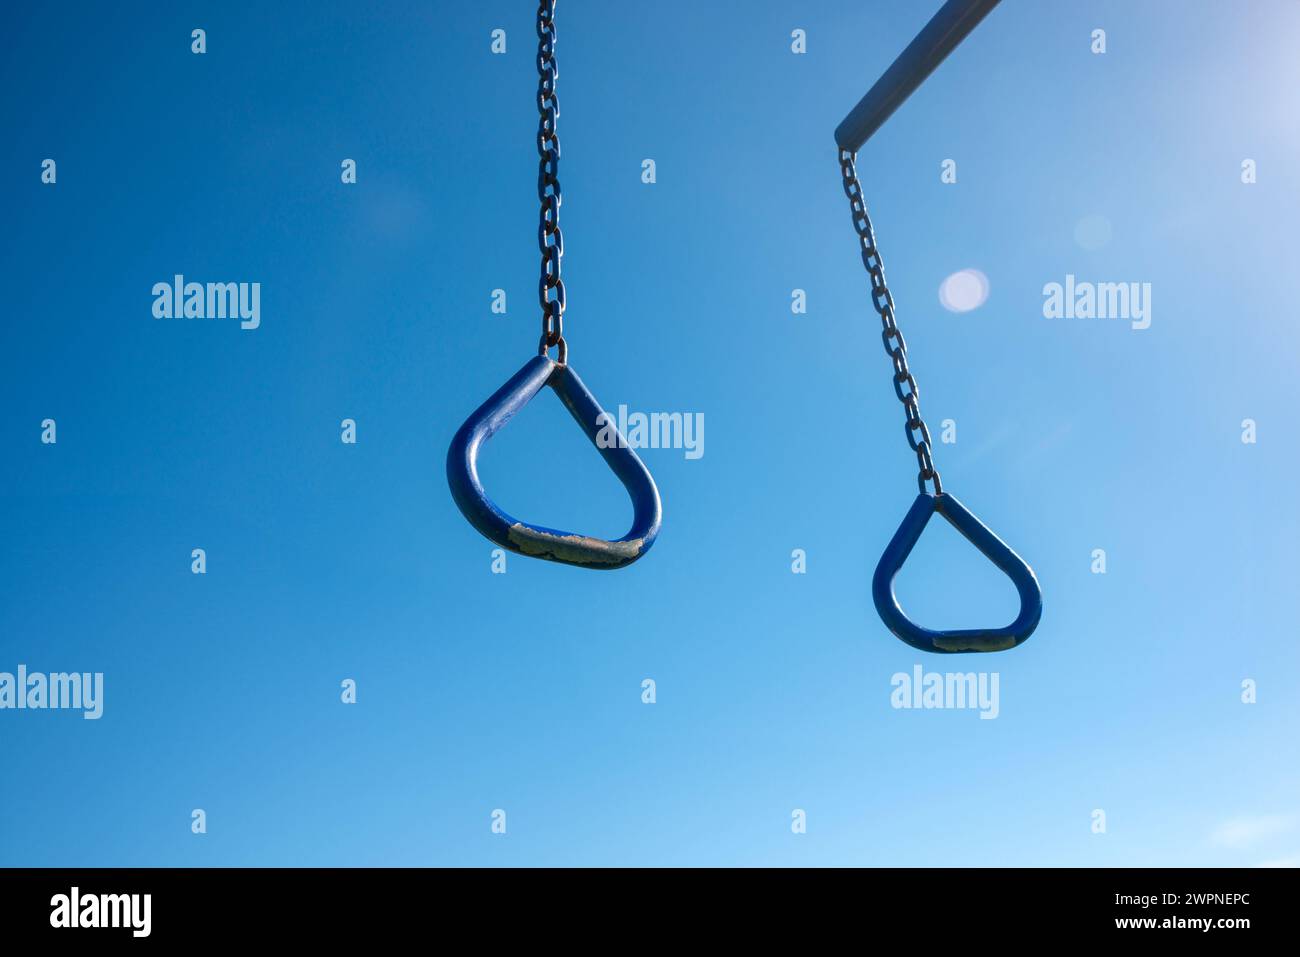 Colgando anillos de ejercicio contra un fondo de cielo azul Foto de stock